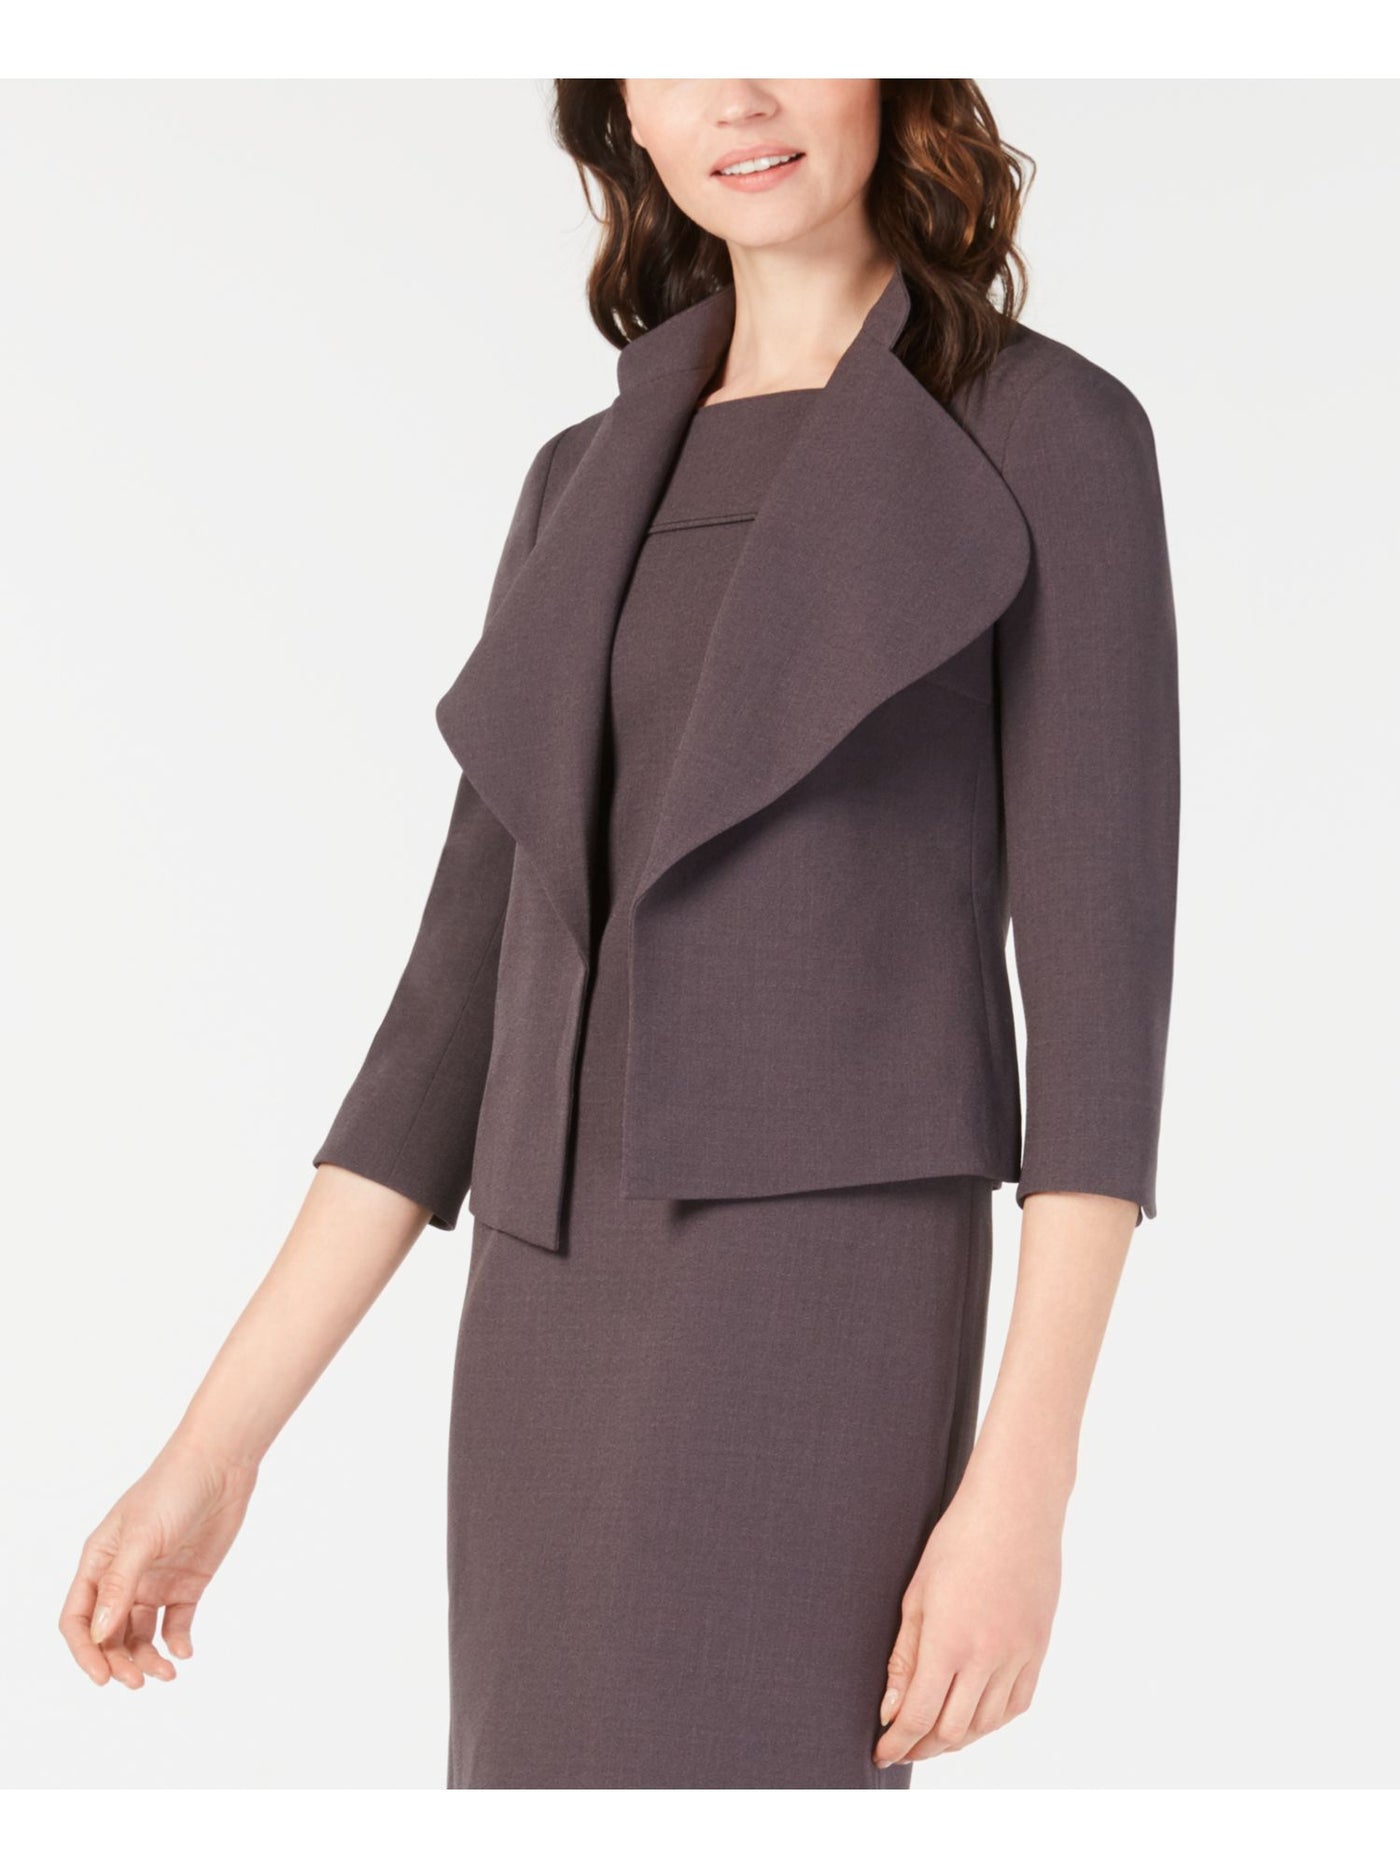 ANNE KLEIN Womens Gray Wear To Work Jacket 4